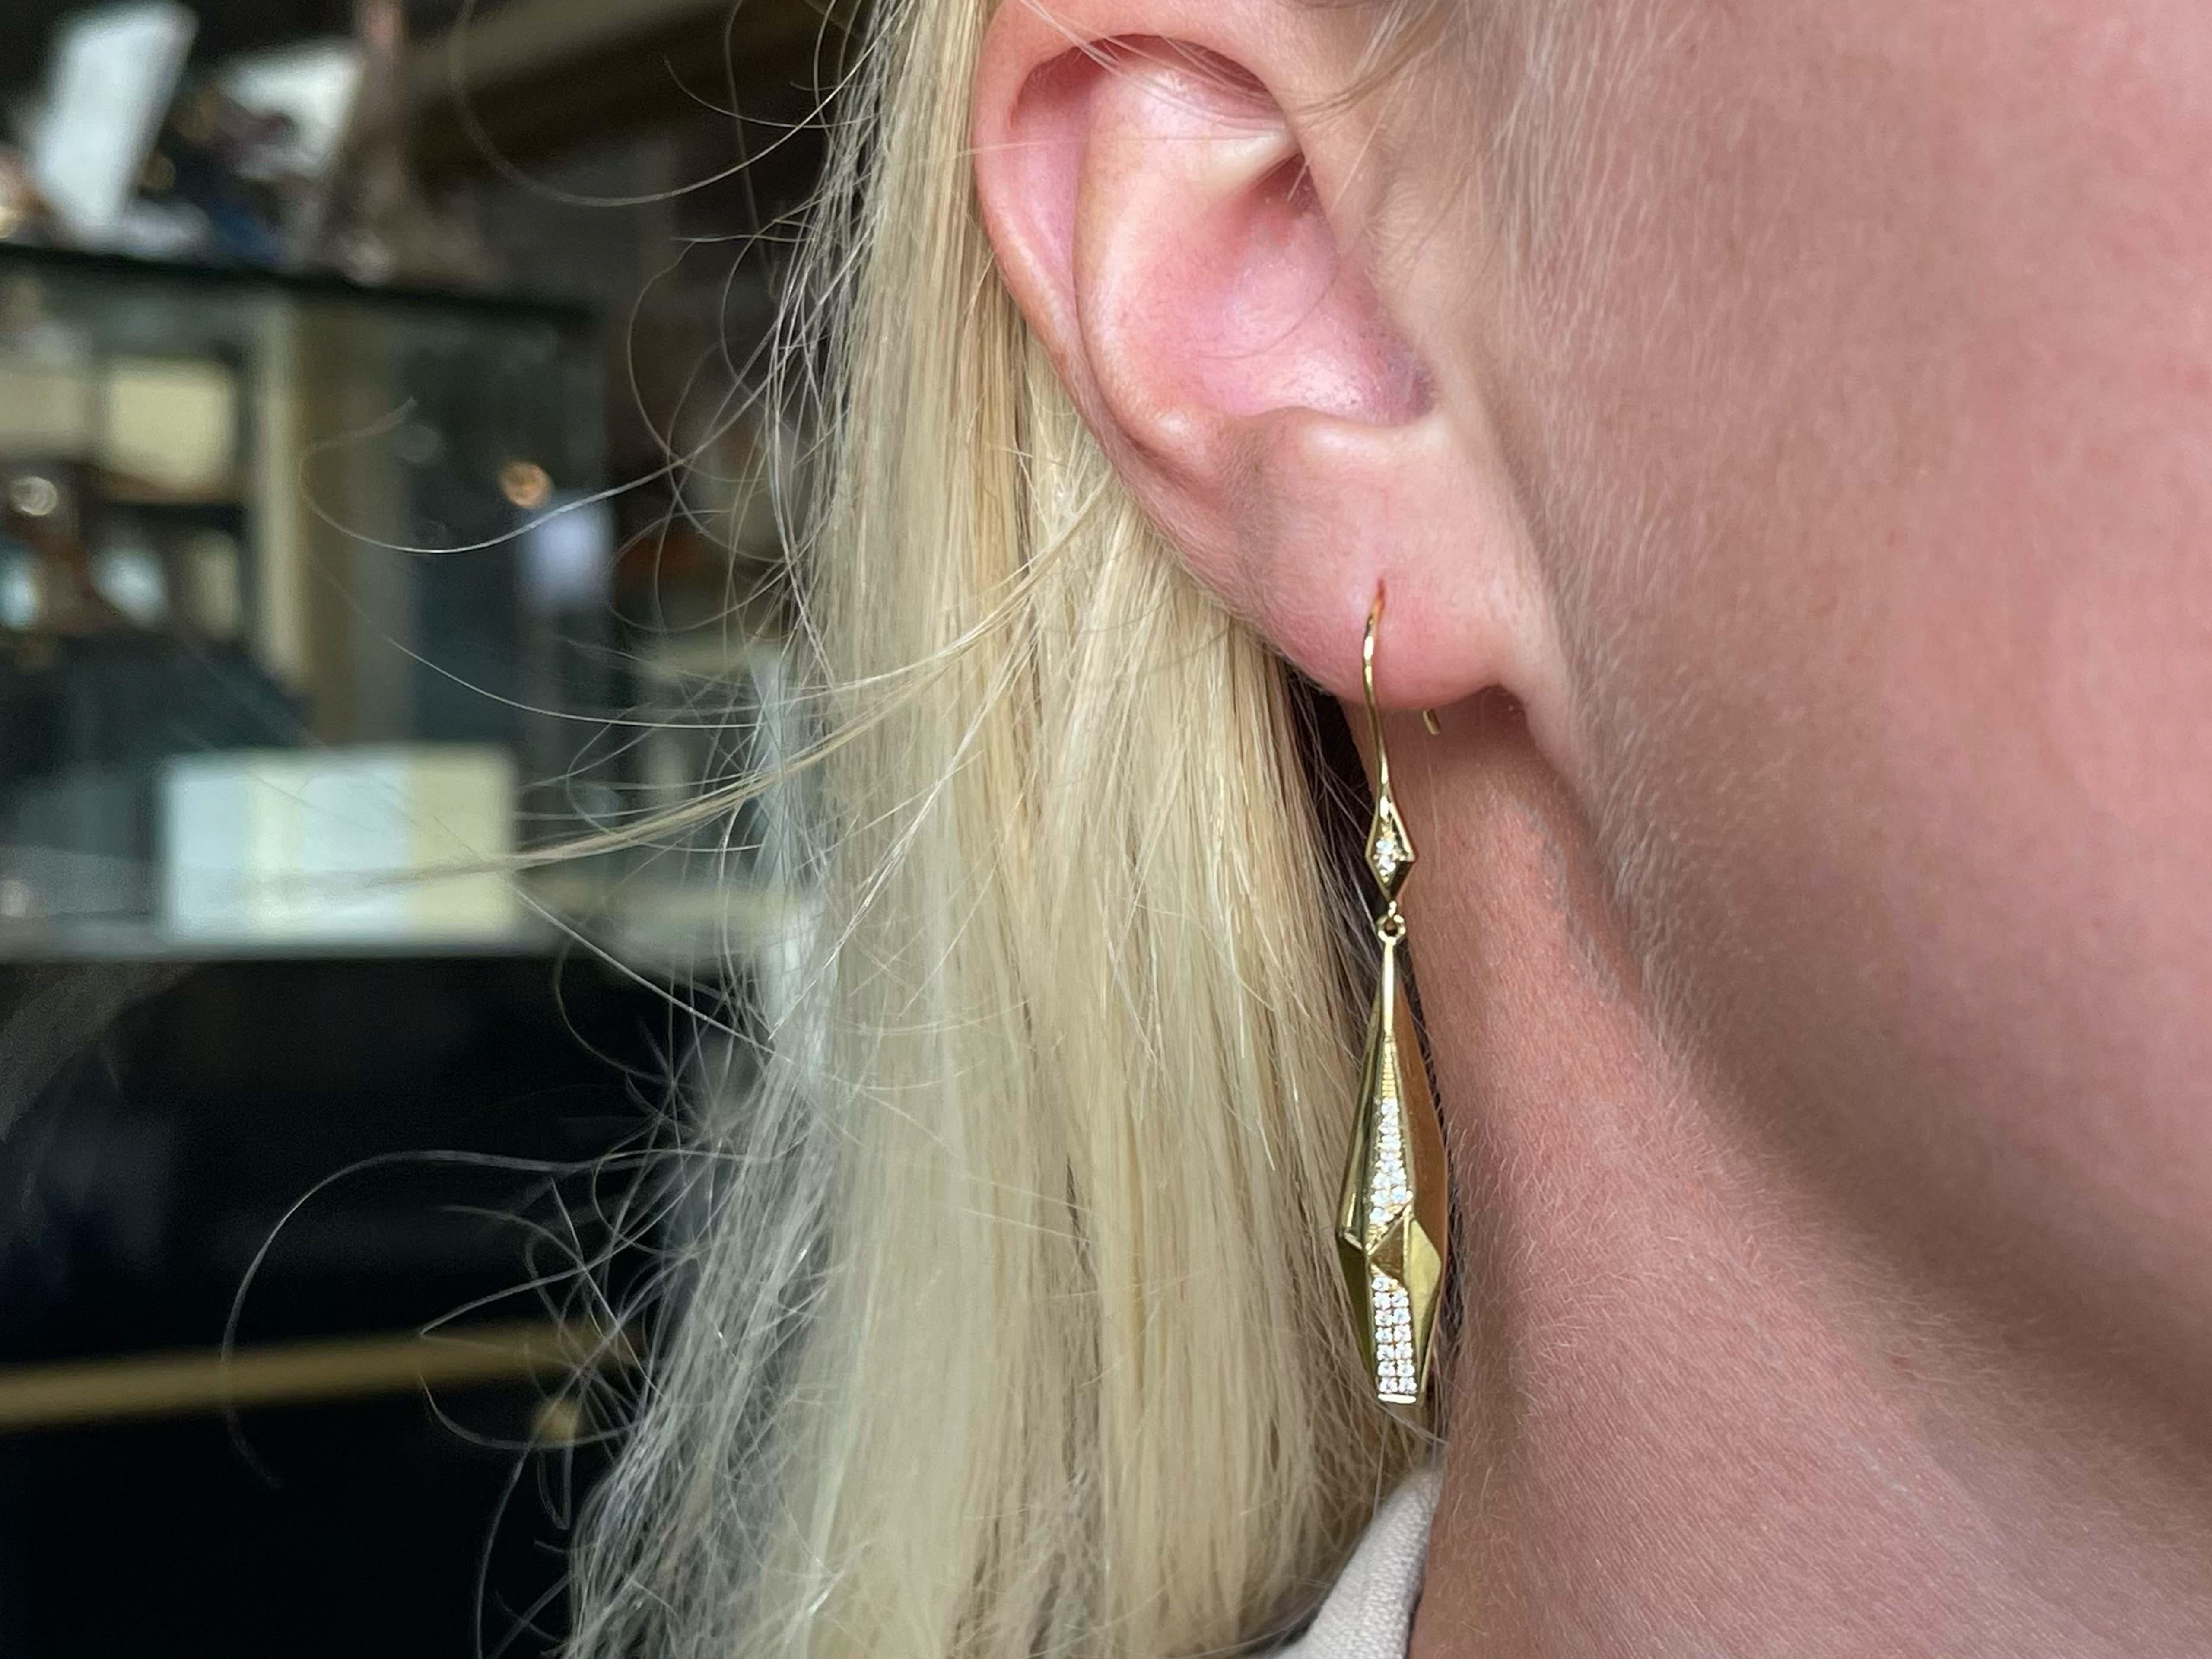 Earrings Specifications:

Metal: 18k Yellow Gold

Earring Length: 2